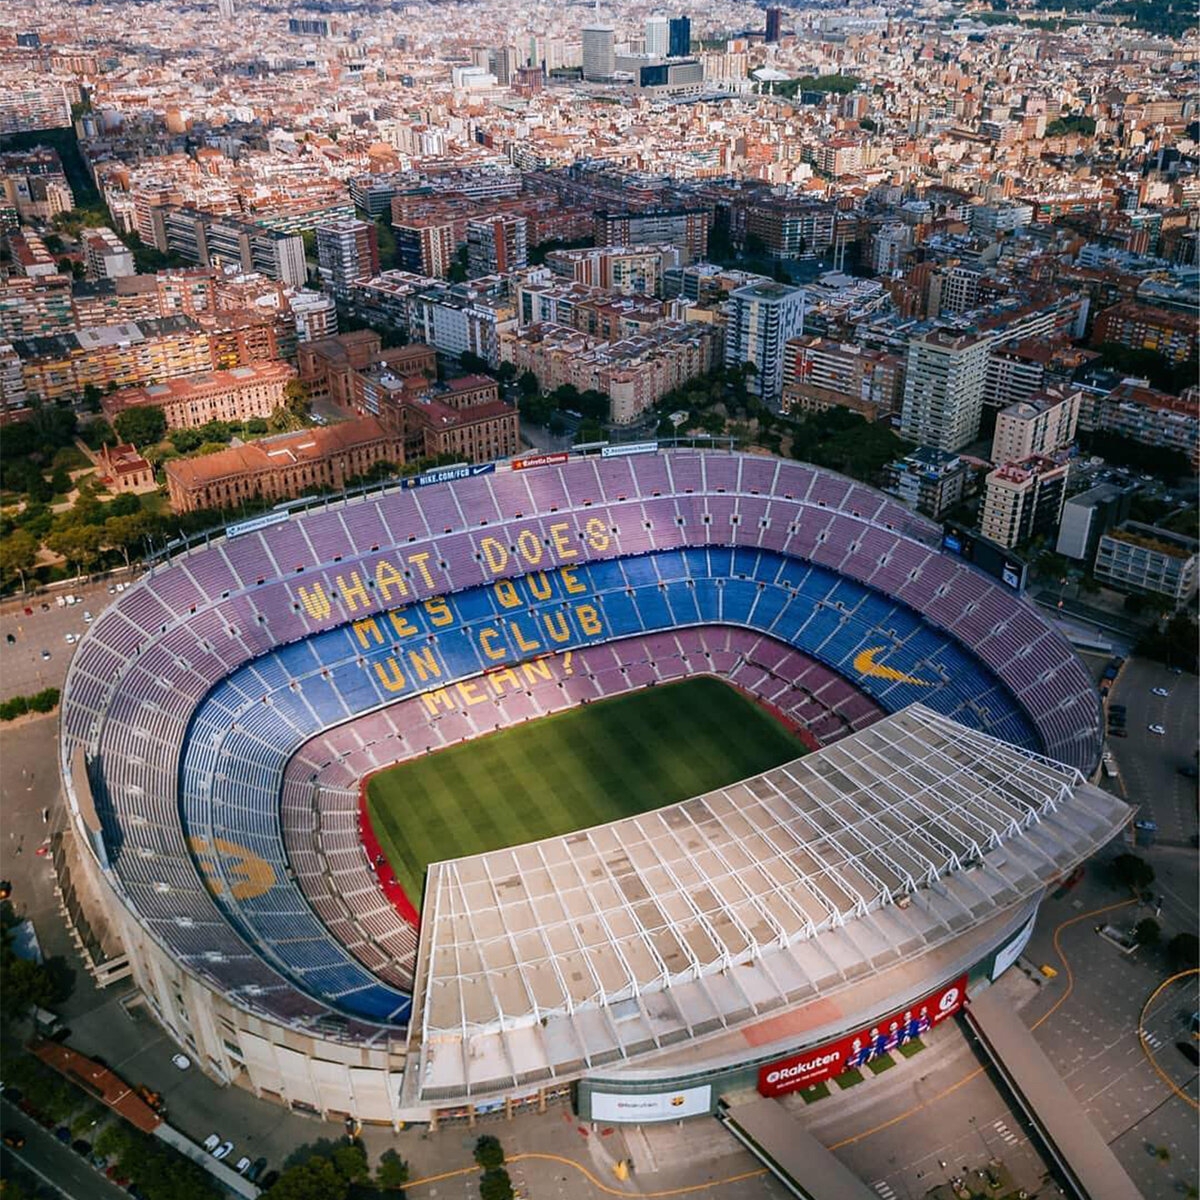 Камп нов. Камп ноу стадион. Стадион Камп ноу в Барселоне. Стадион Camp nou. Барселона футбольный стадион Камп ноу.